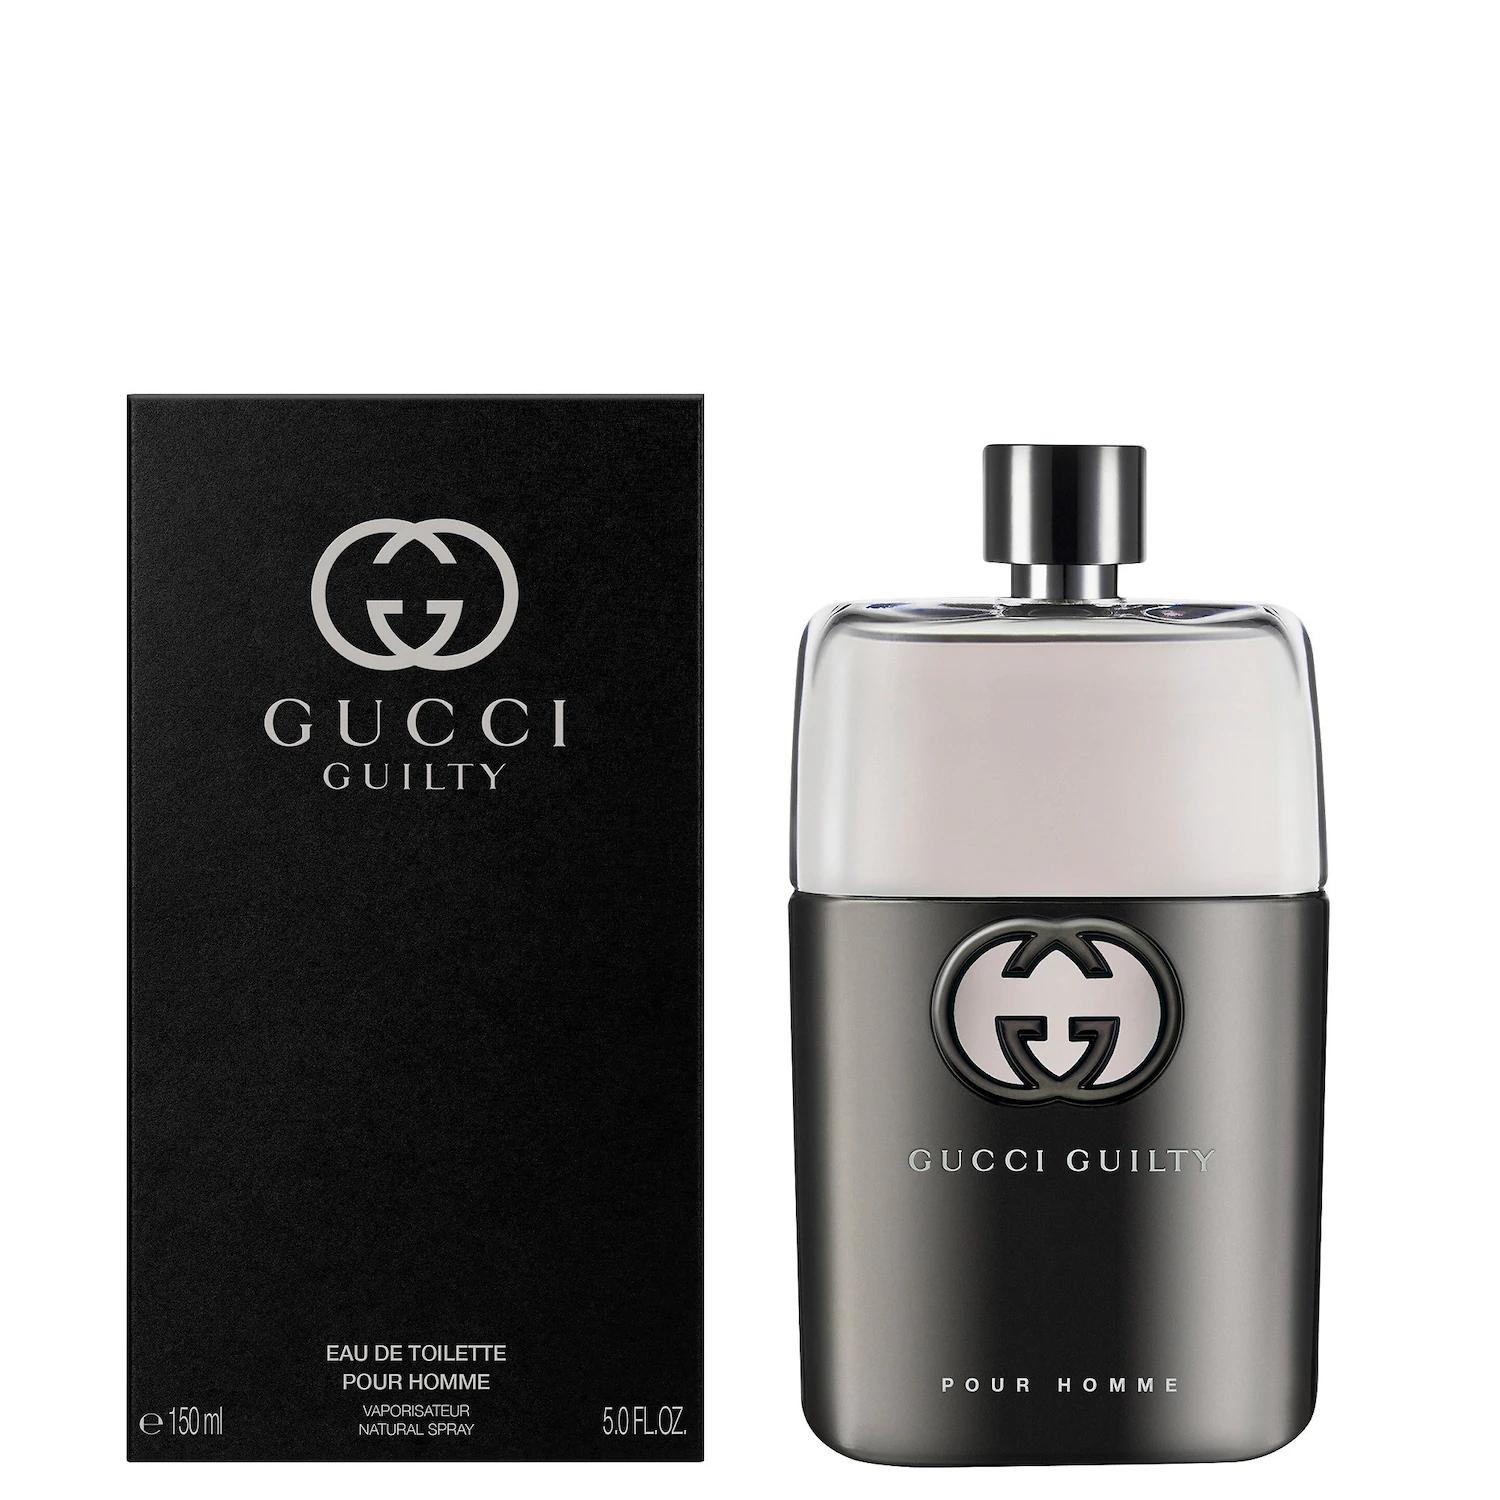 perfume gucci guilty hombre precio - Qué es Gucci Guilty